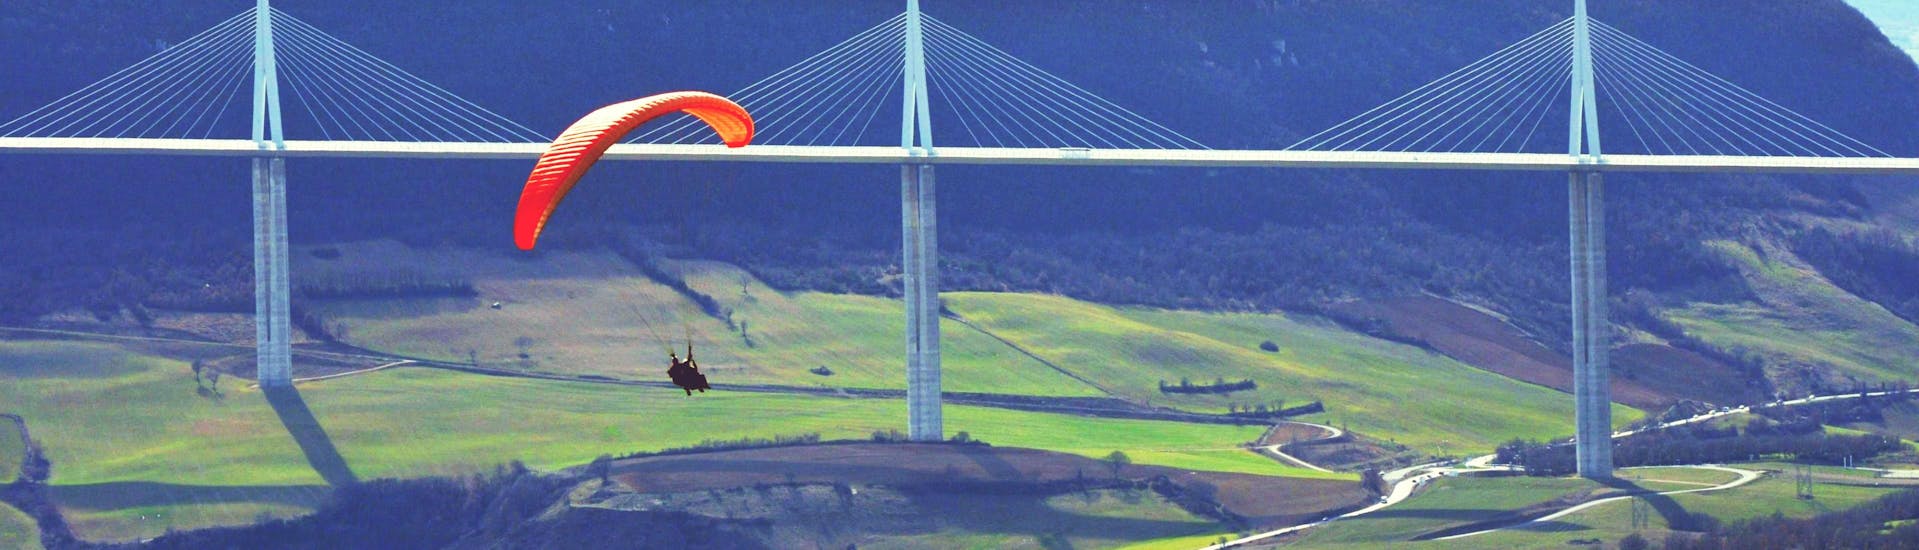 Un pilote de parapente d'Air Magic Parapente effectue un vol en tandem en parapente "XL" devant le viaduc de Millau.